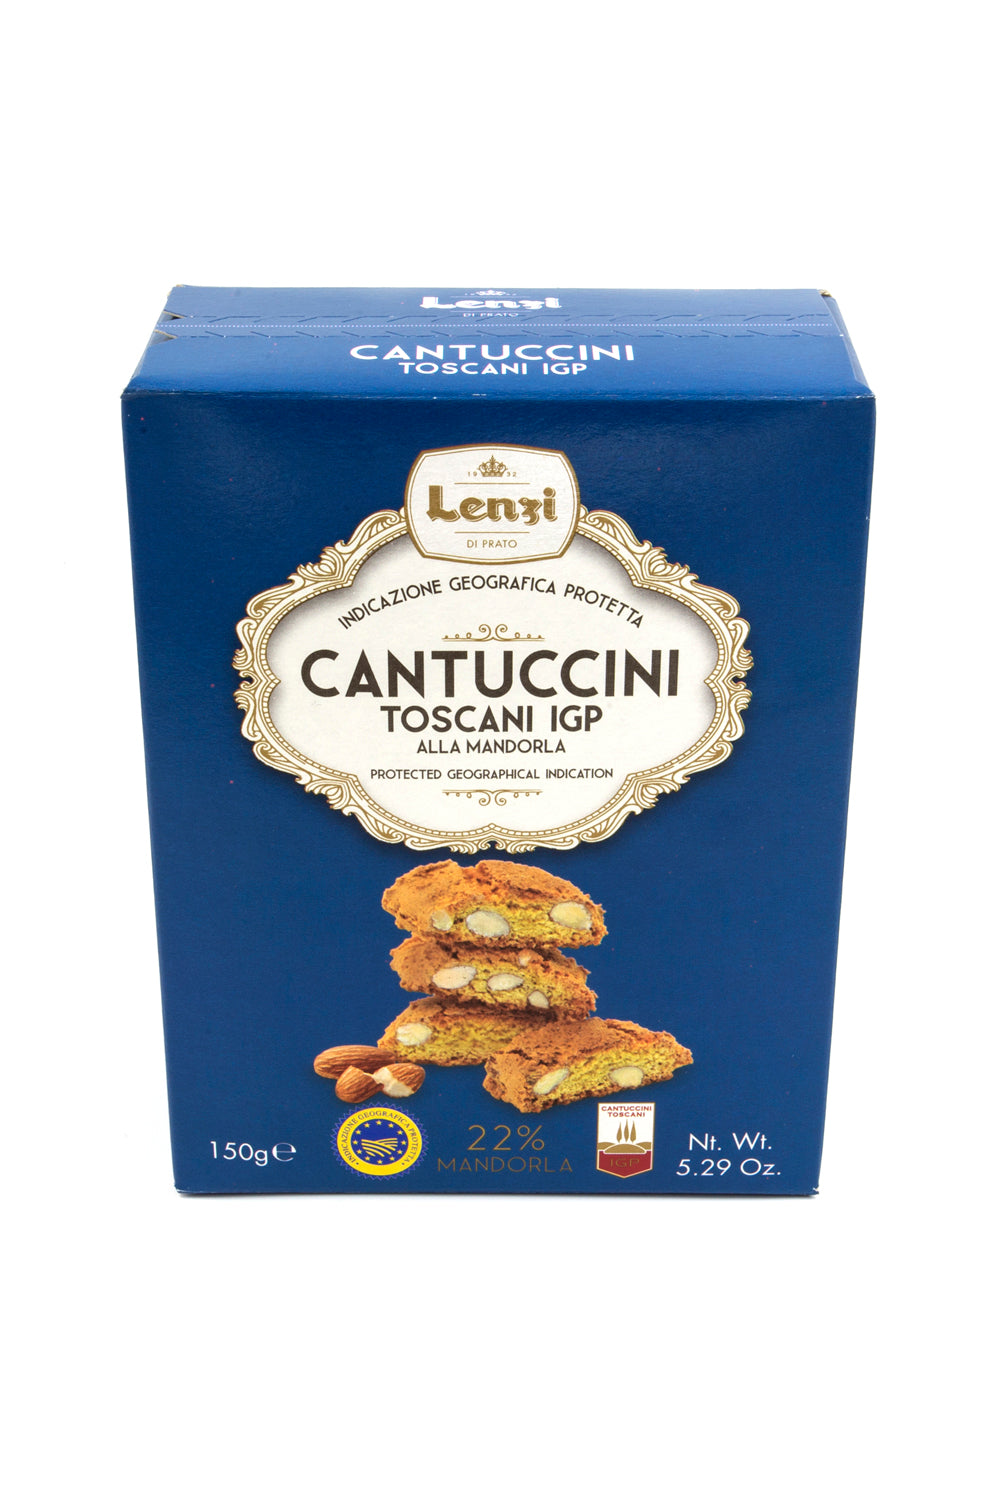 Tuscan Cantuccini IGP 150g